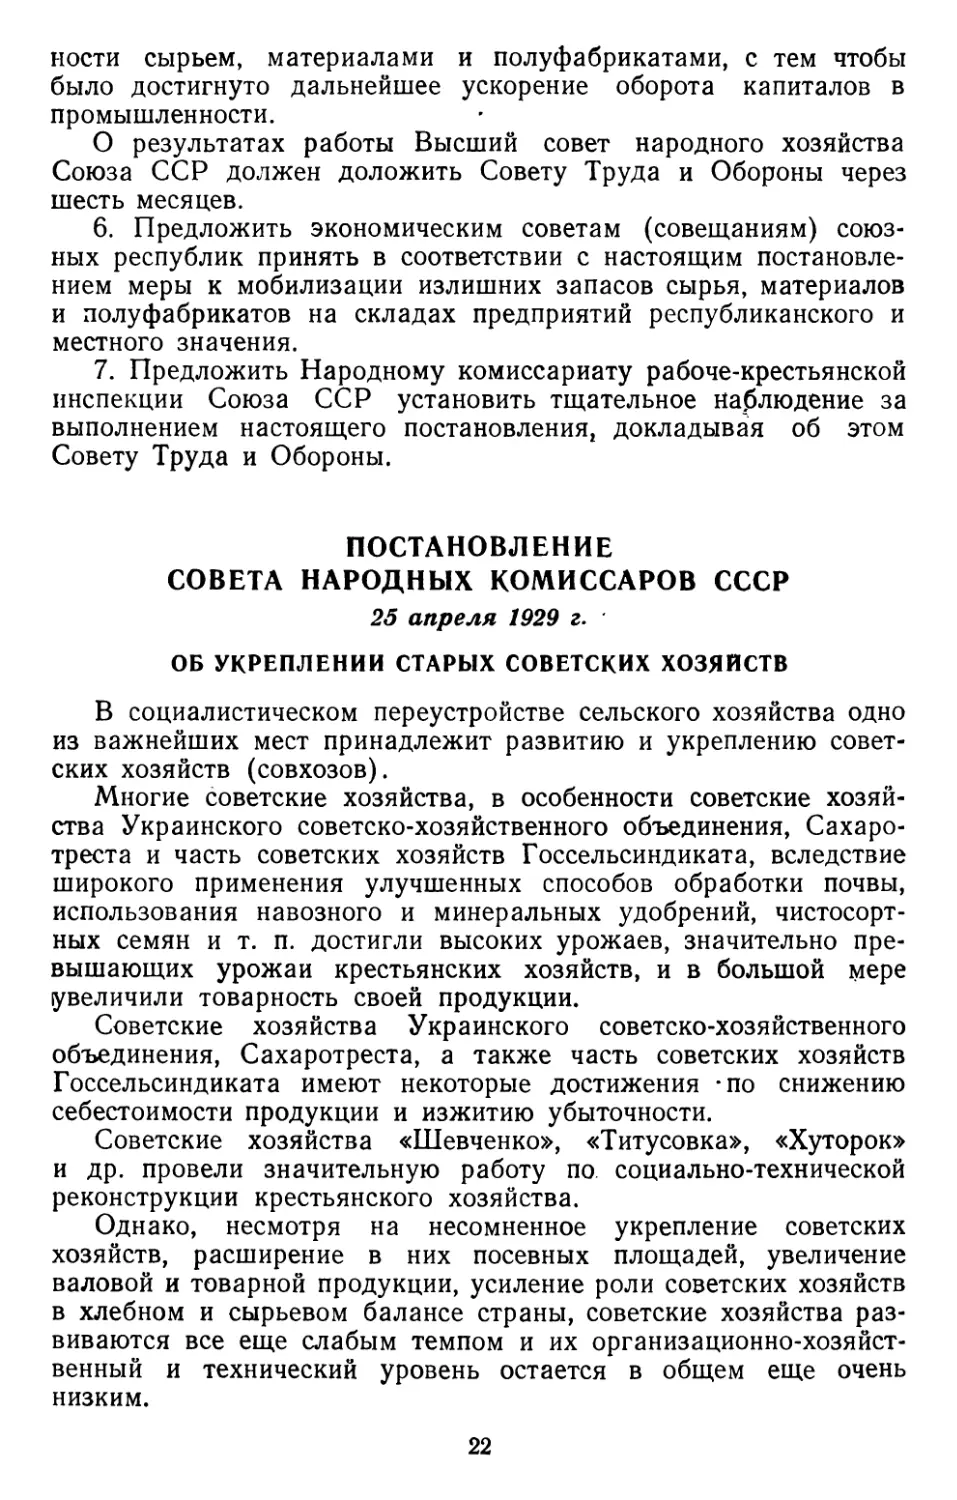 Постановление Совета Народных Комиссаров СССР, 25 апреля 1929 г. Об укреплении старых советских хозяйств